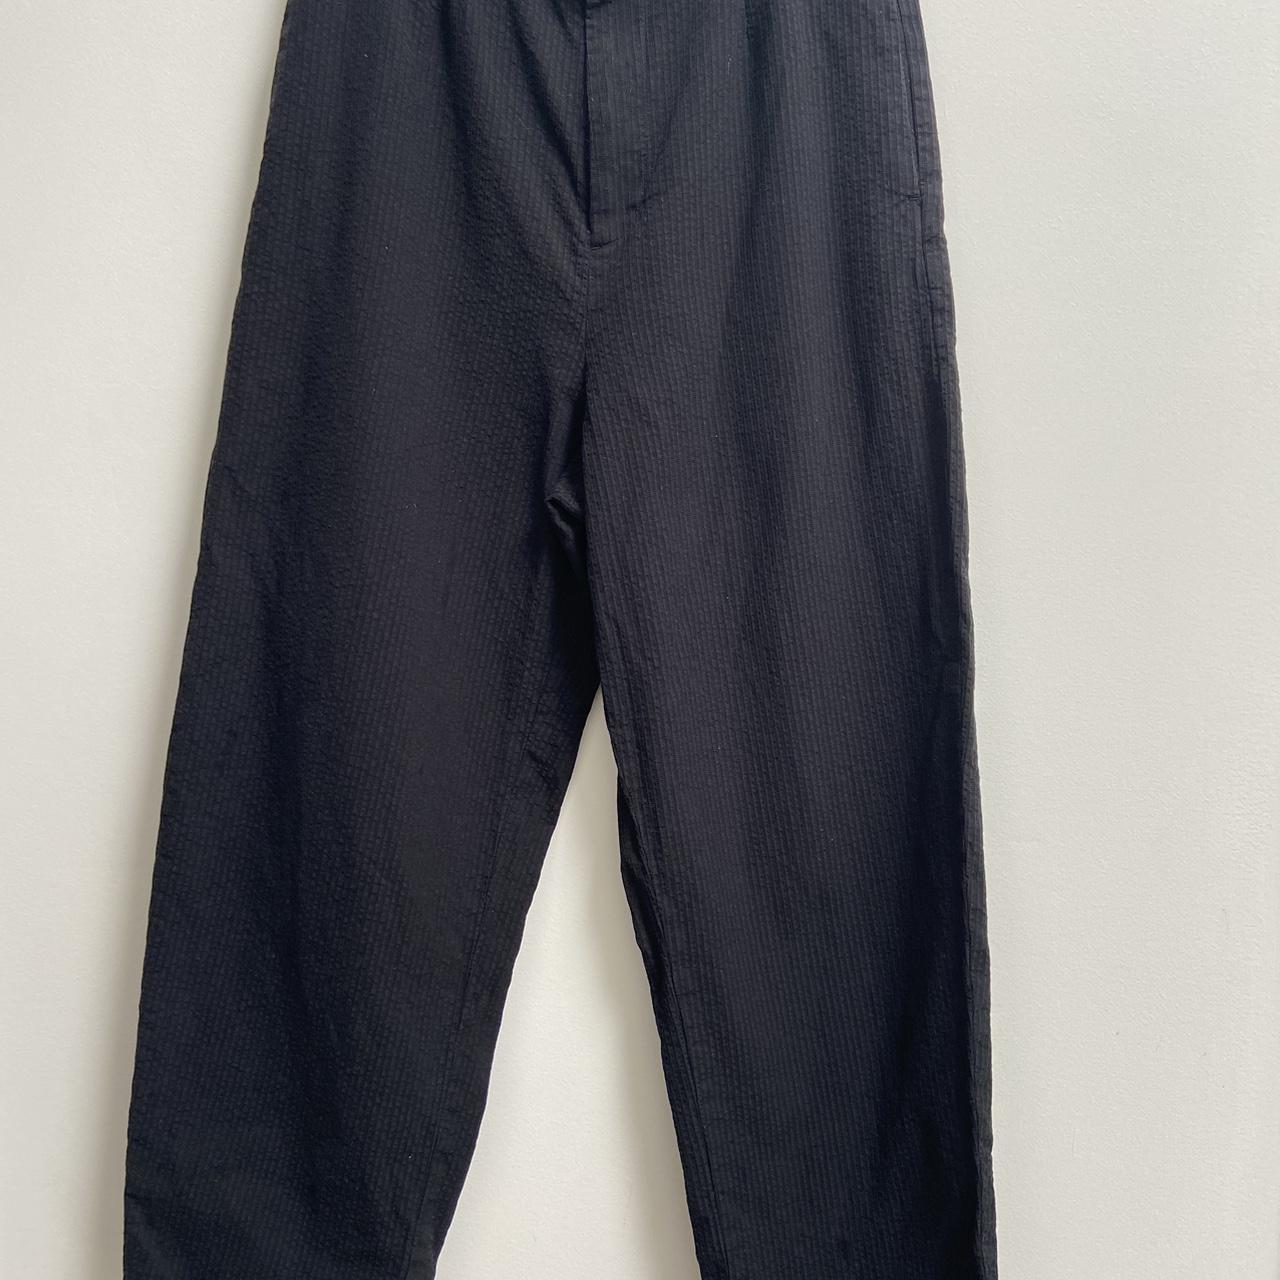 Uniqlo Mens Black Heattech Dress Pants Size 36/34 - beyond exchange